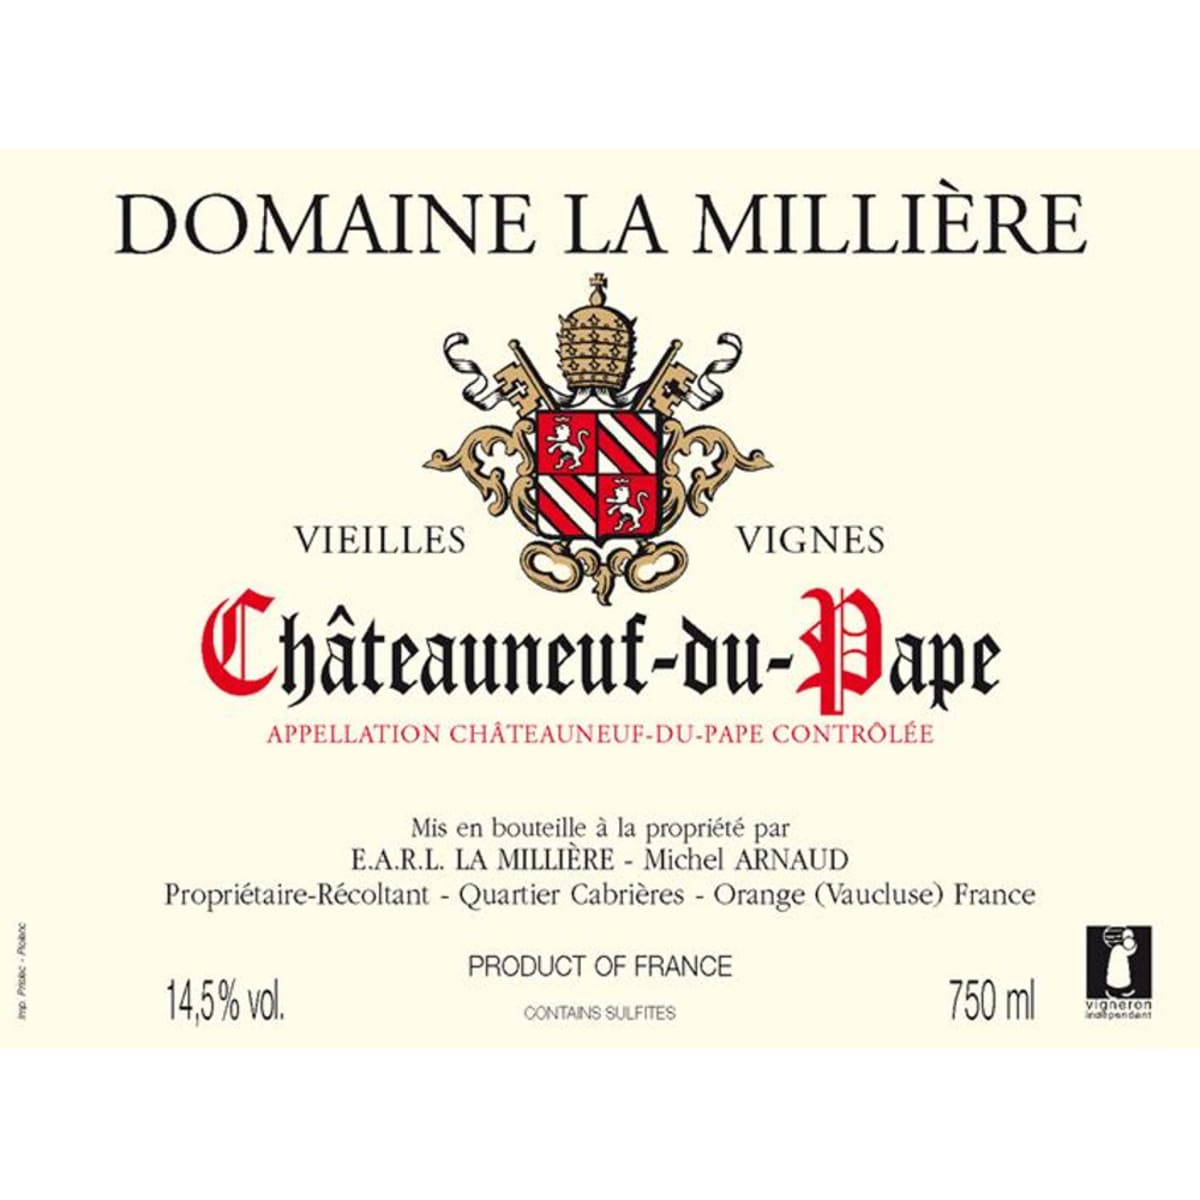 Domaine La Milliere Chateauneuf-du-Pape Vieilles Vignes (half-bottle) 2007 Front Label